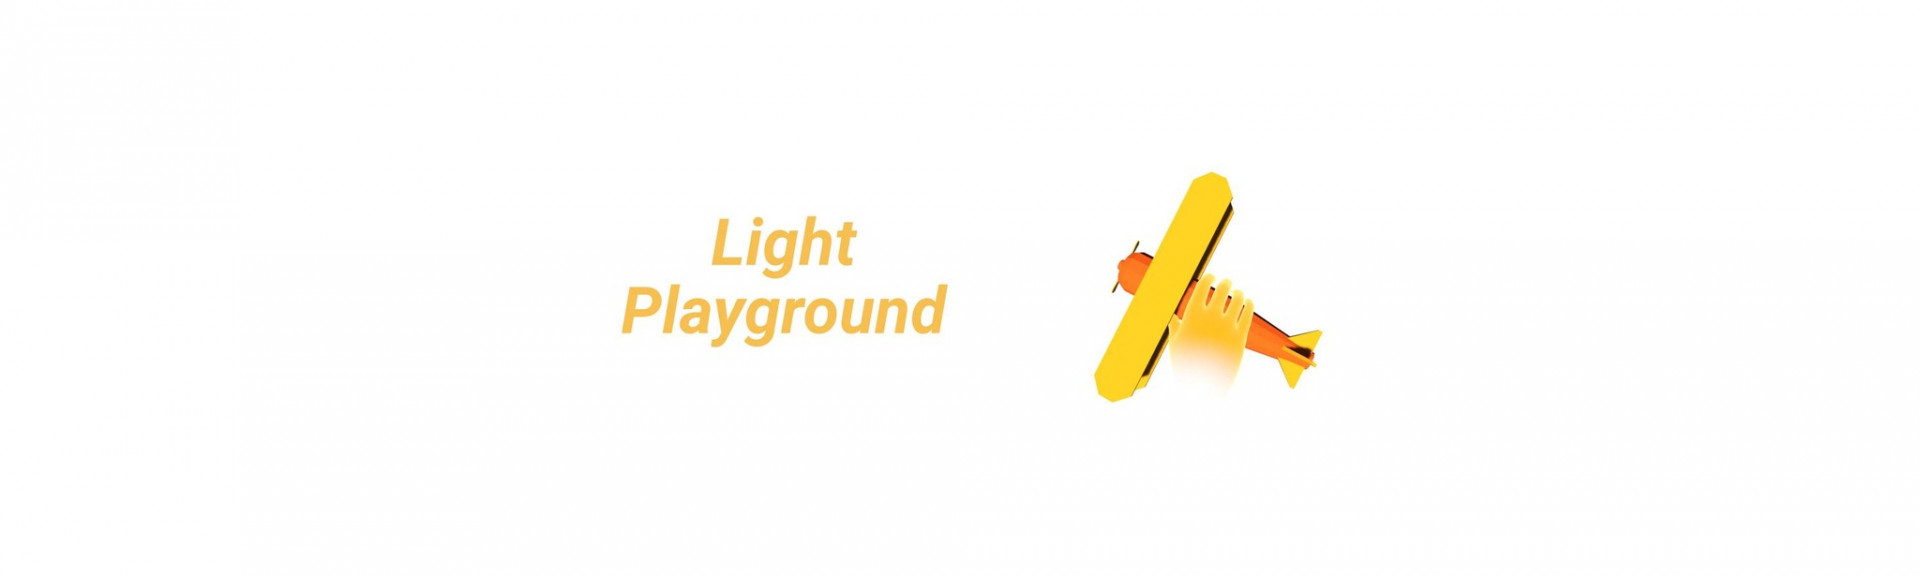 Light Playground